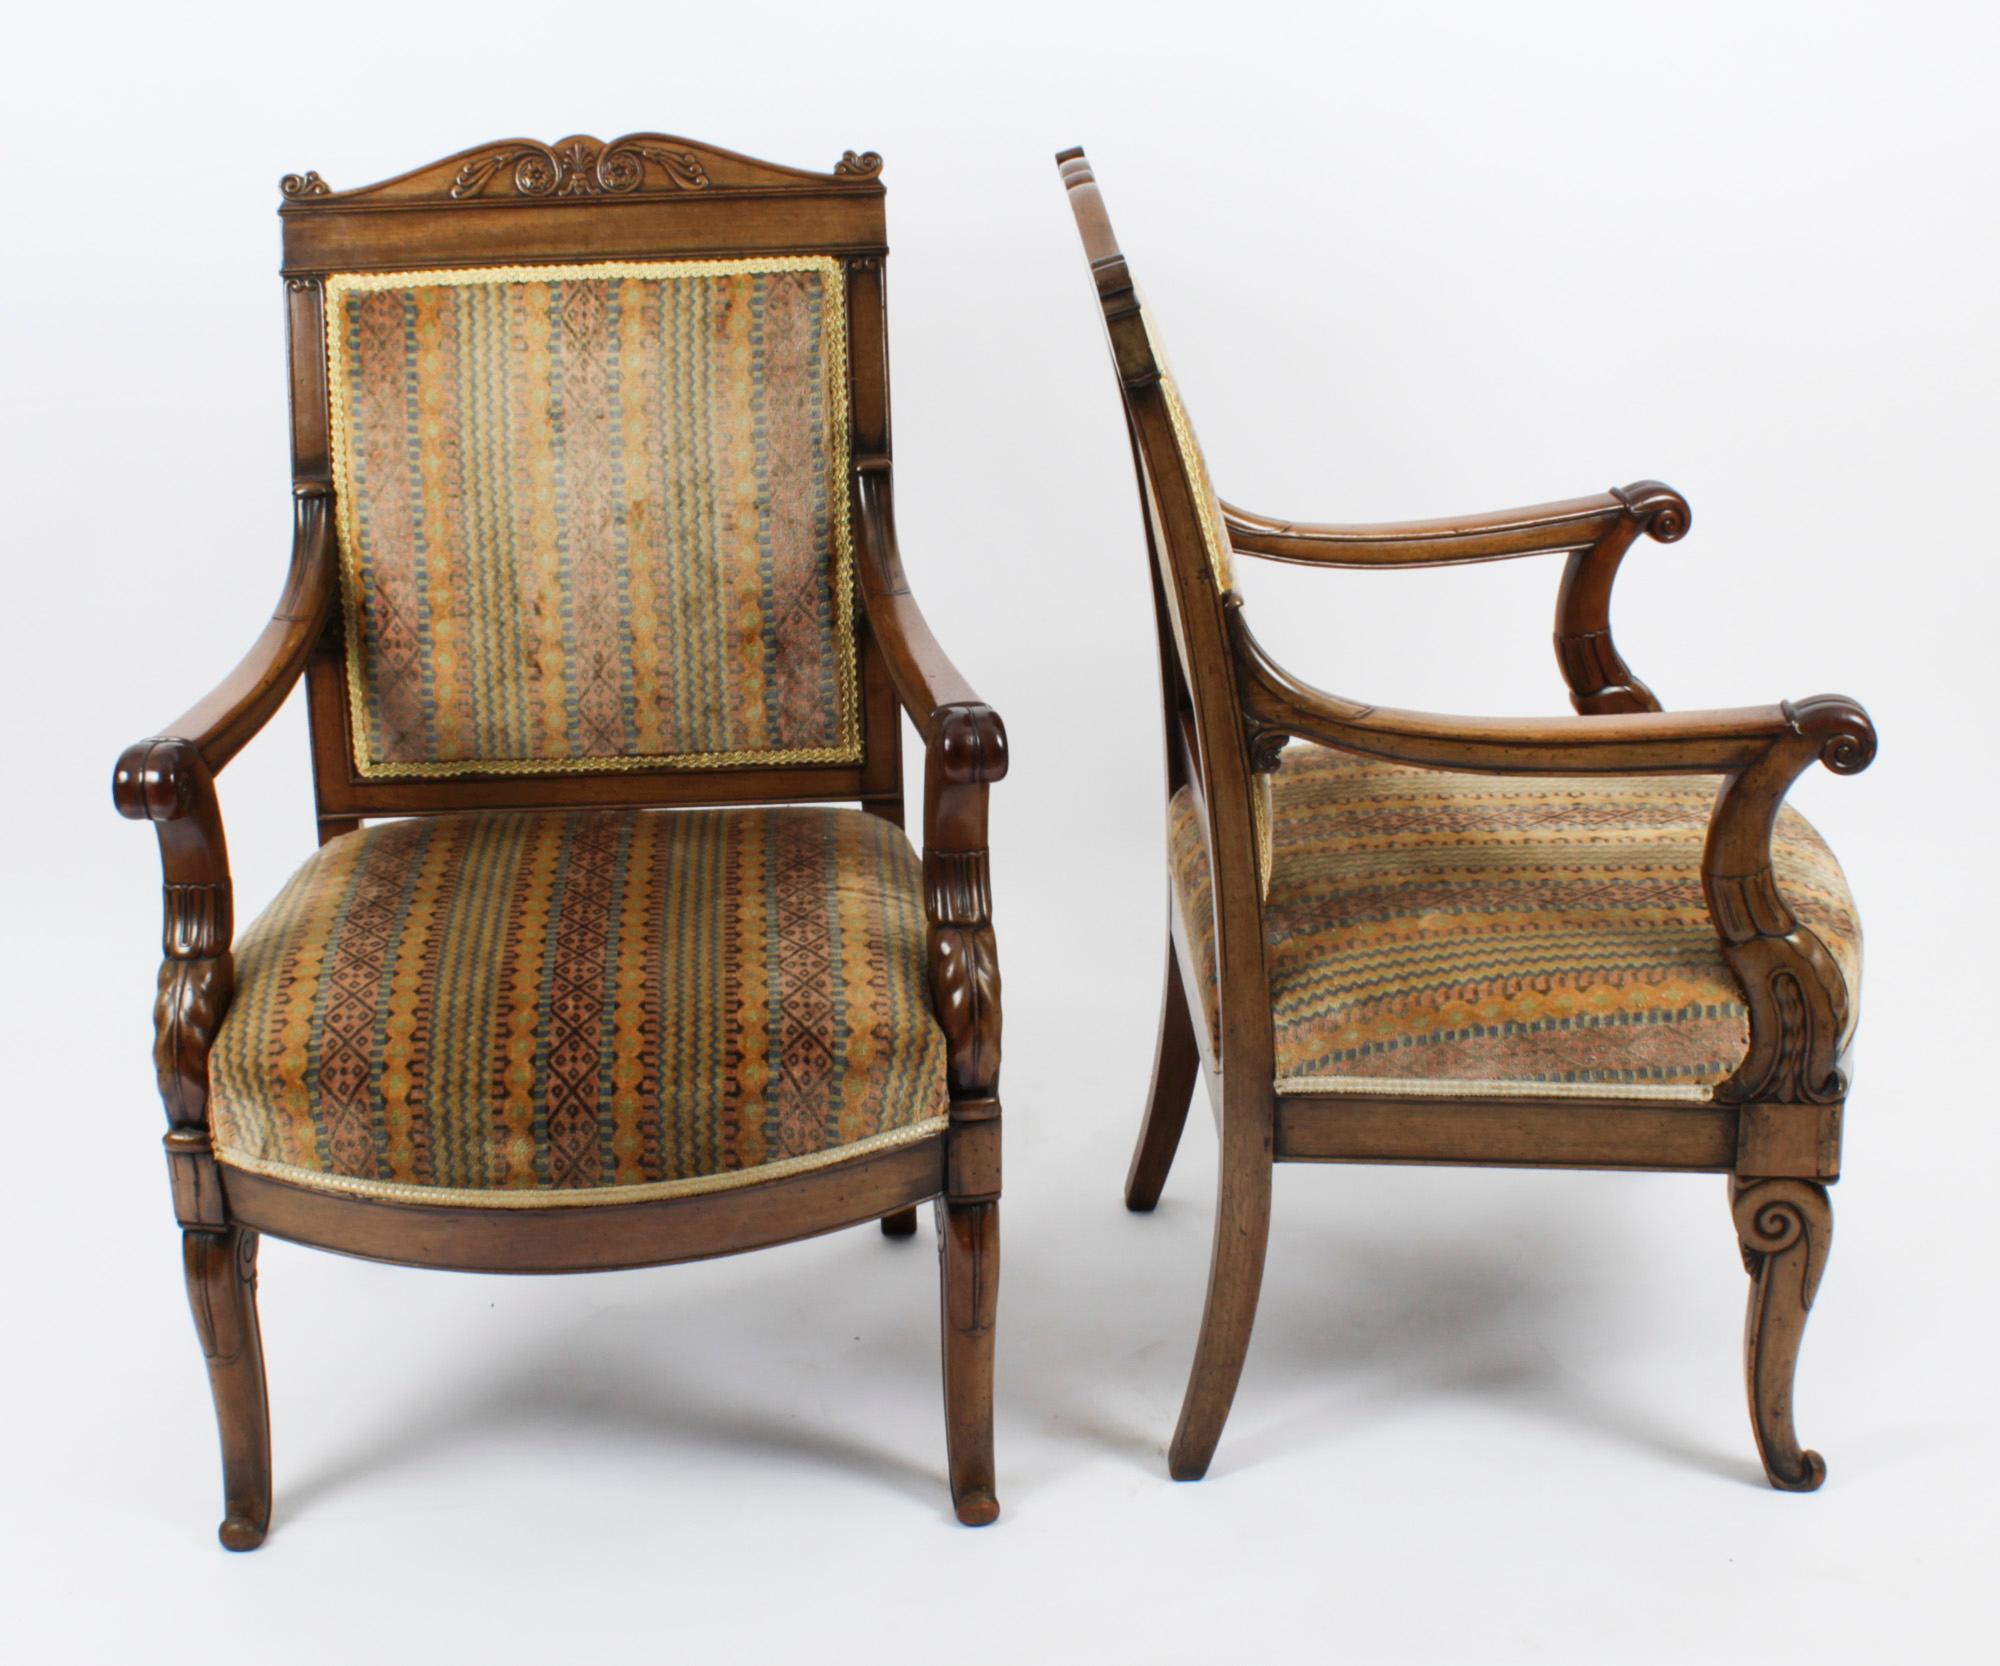 Il s'agit d'une élégante paire de fauteuils anciens de style néo-empire français en acajou à dossier tapissé, datant d'environ 1880.

L'acajou est d'une belle couleur avec une superbe patine. La tablette supérieure sculptée présente des patères et